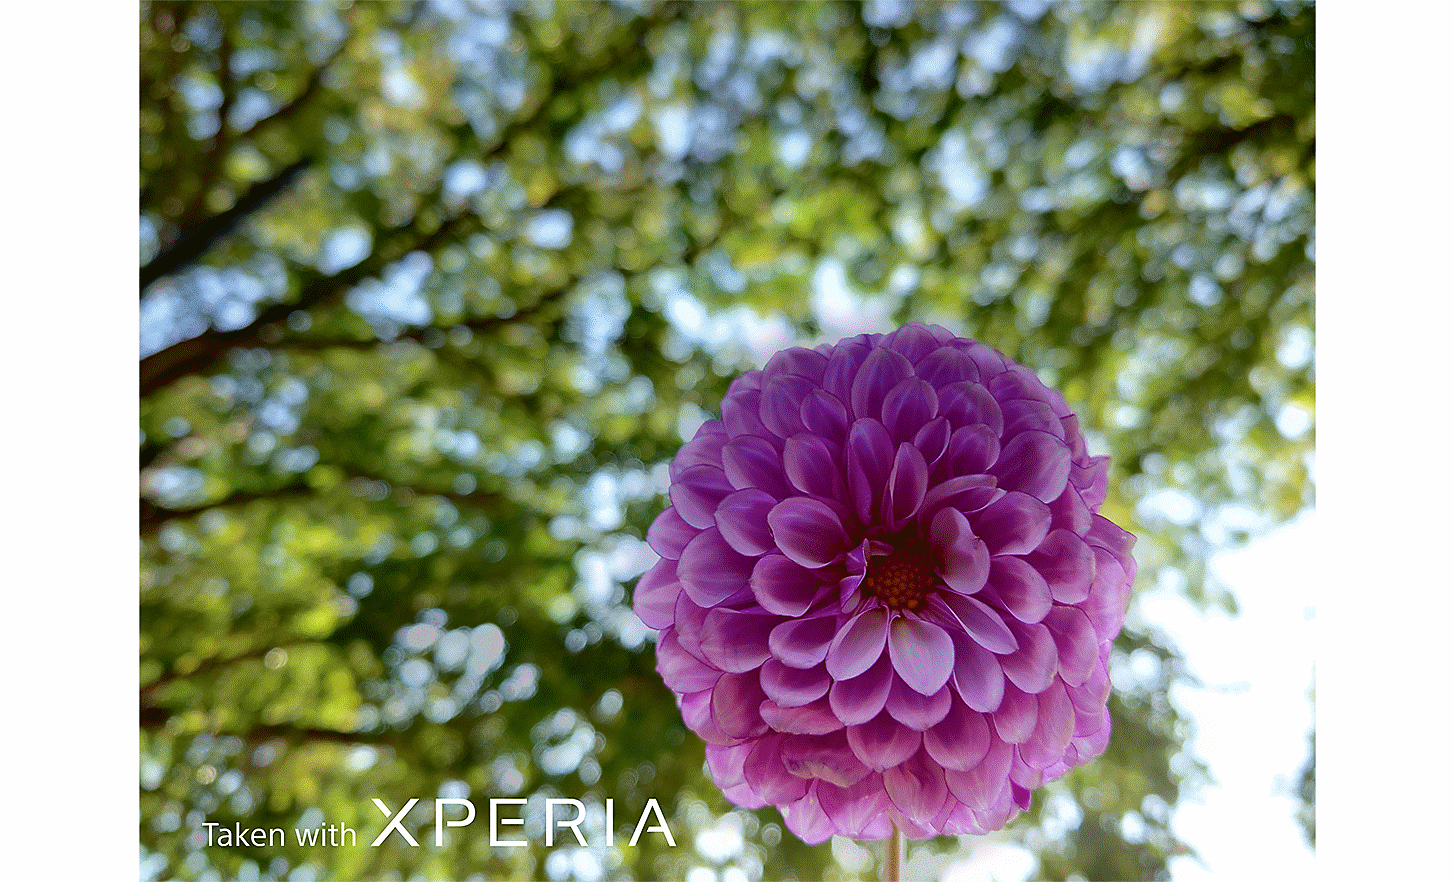 粉紅色花朵的特寫，背景是茂密的大樹。寫著「使用 XPERIA 拍攝」的文字。